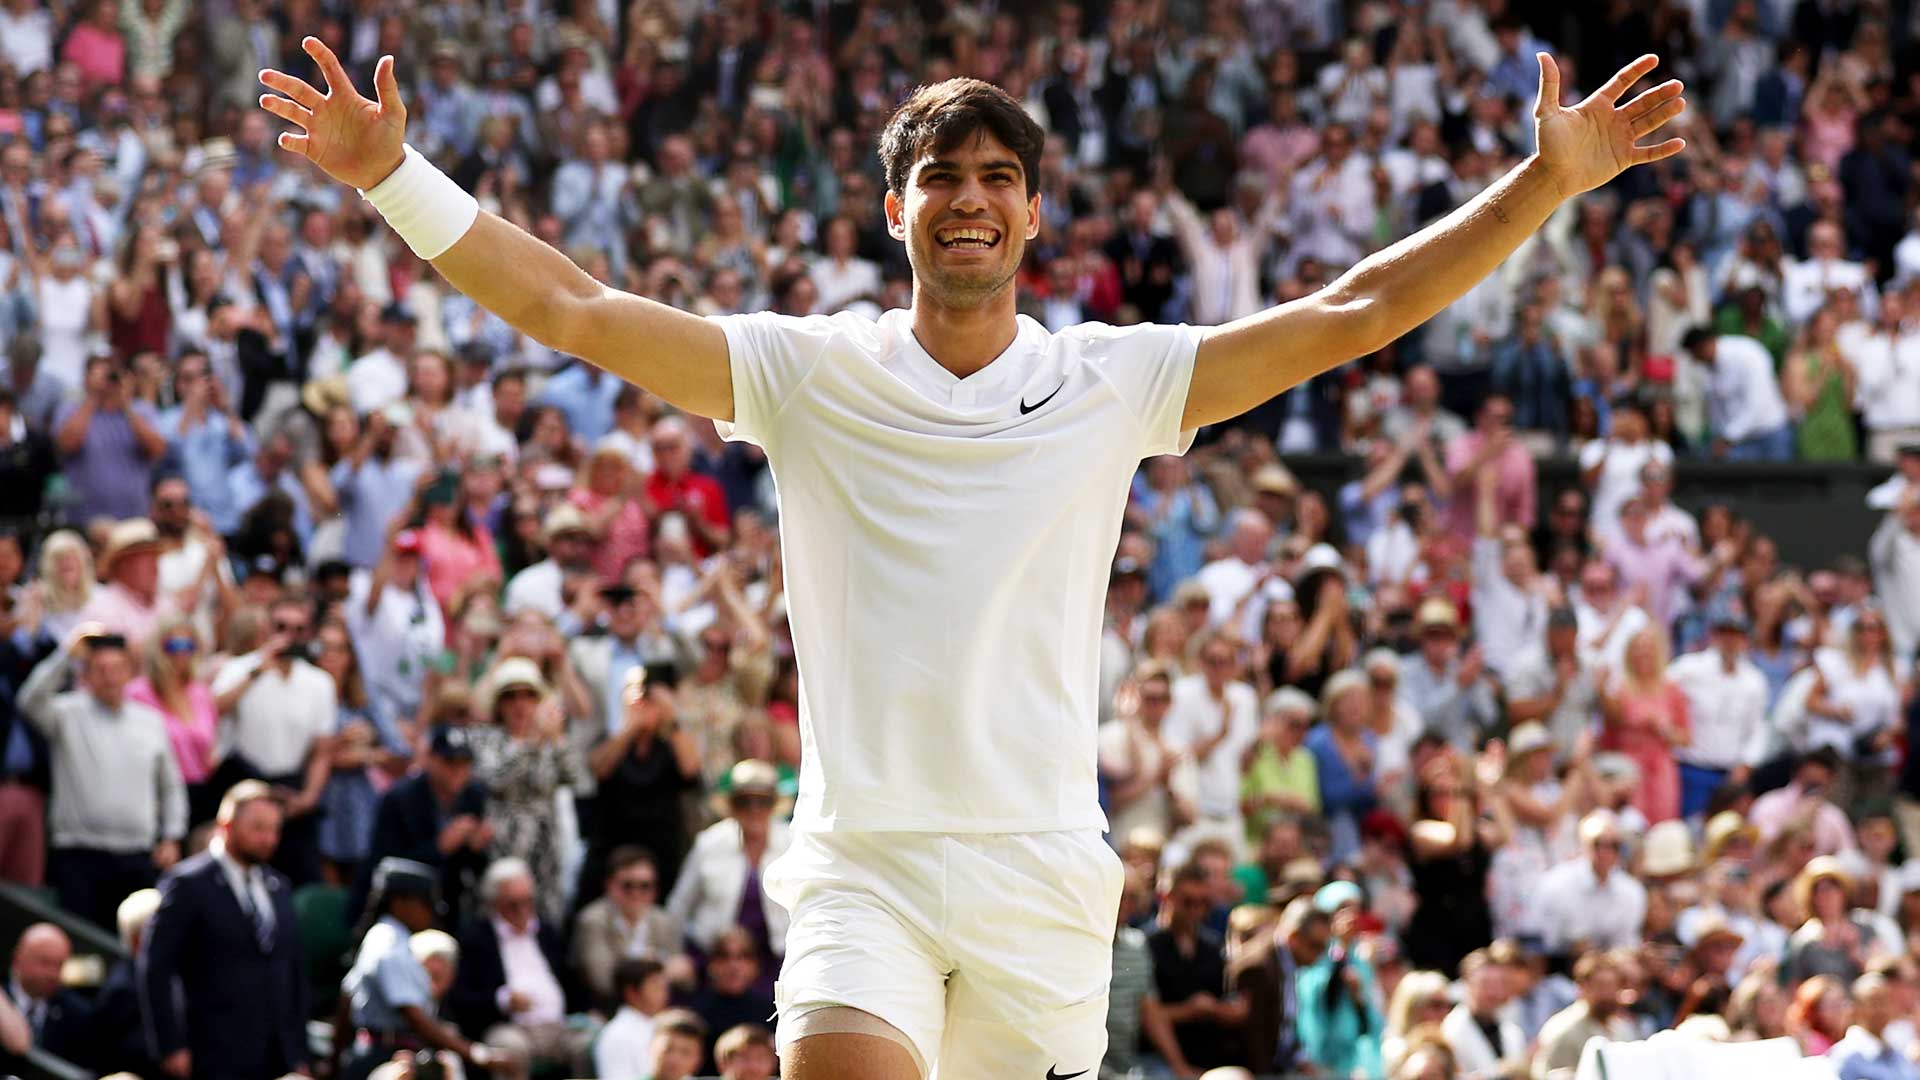 Alcaraz beats Djokovic in Wimbledon final after late plot twist